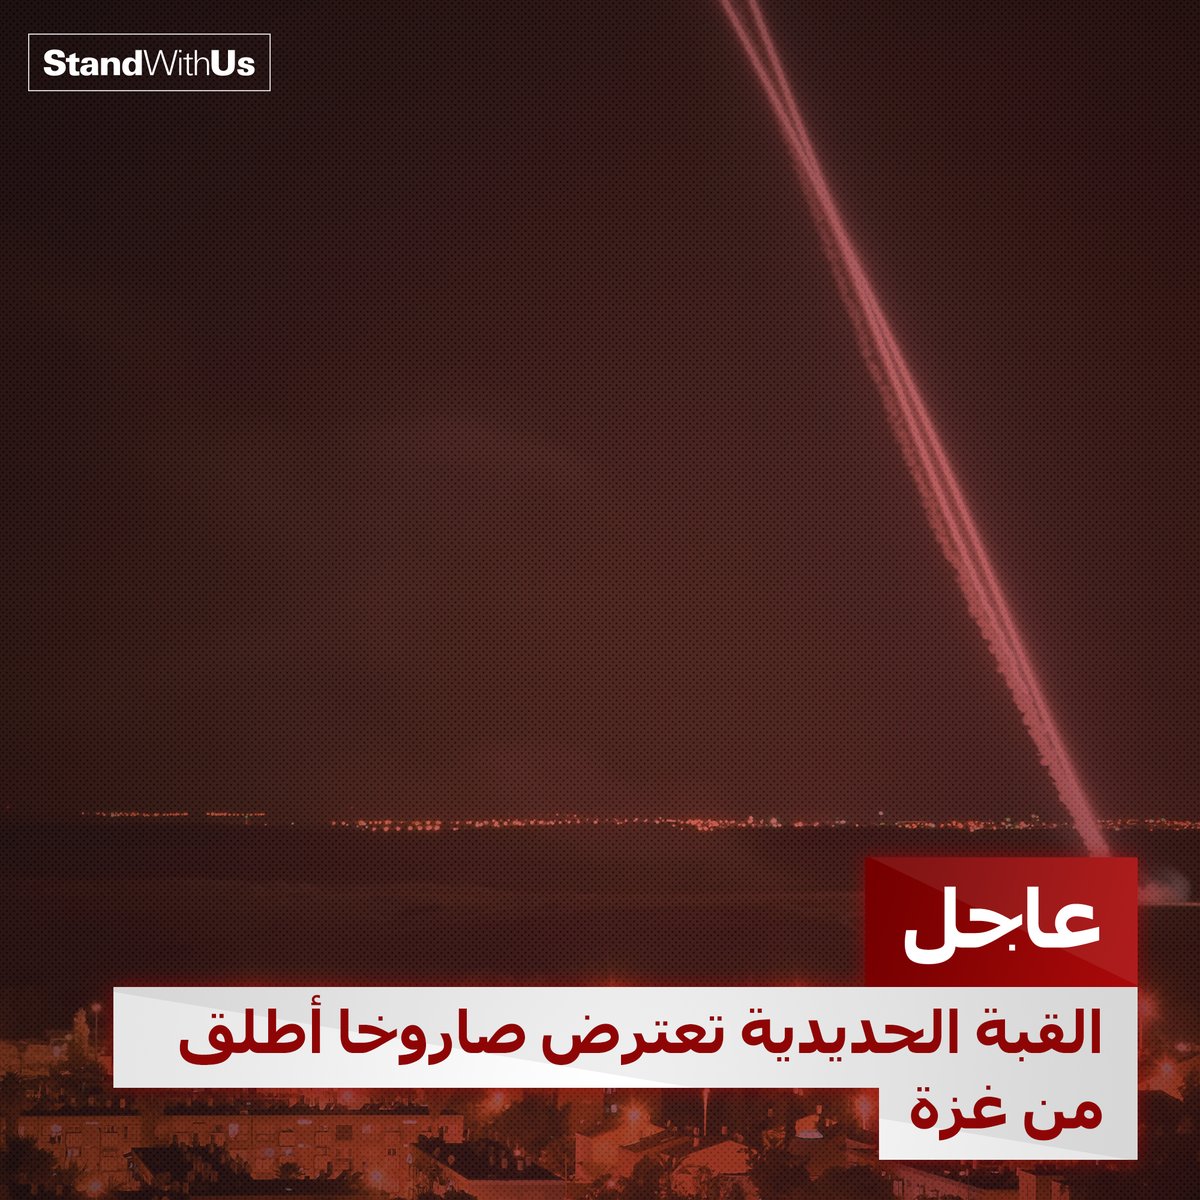 قبل قليل تم إطلاق صاروخ من قطاع غزة باتجاه جنوب إسرائيل تصدت له منظومة القبة الحديدية. ...